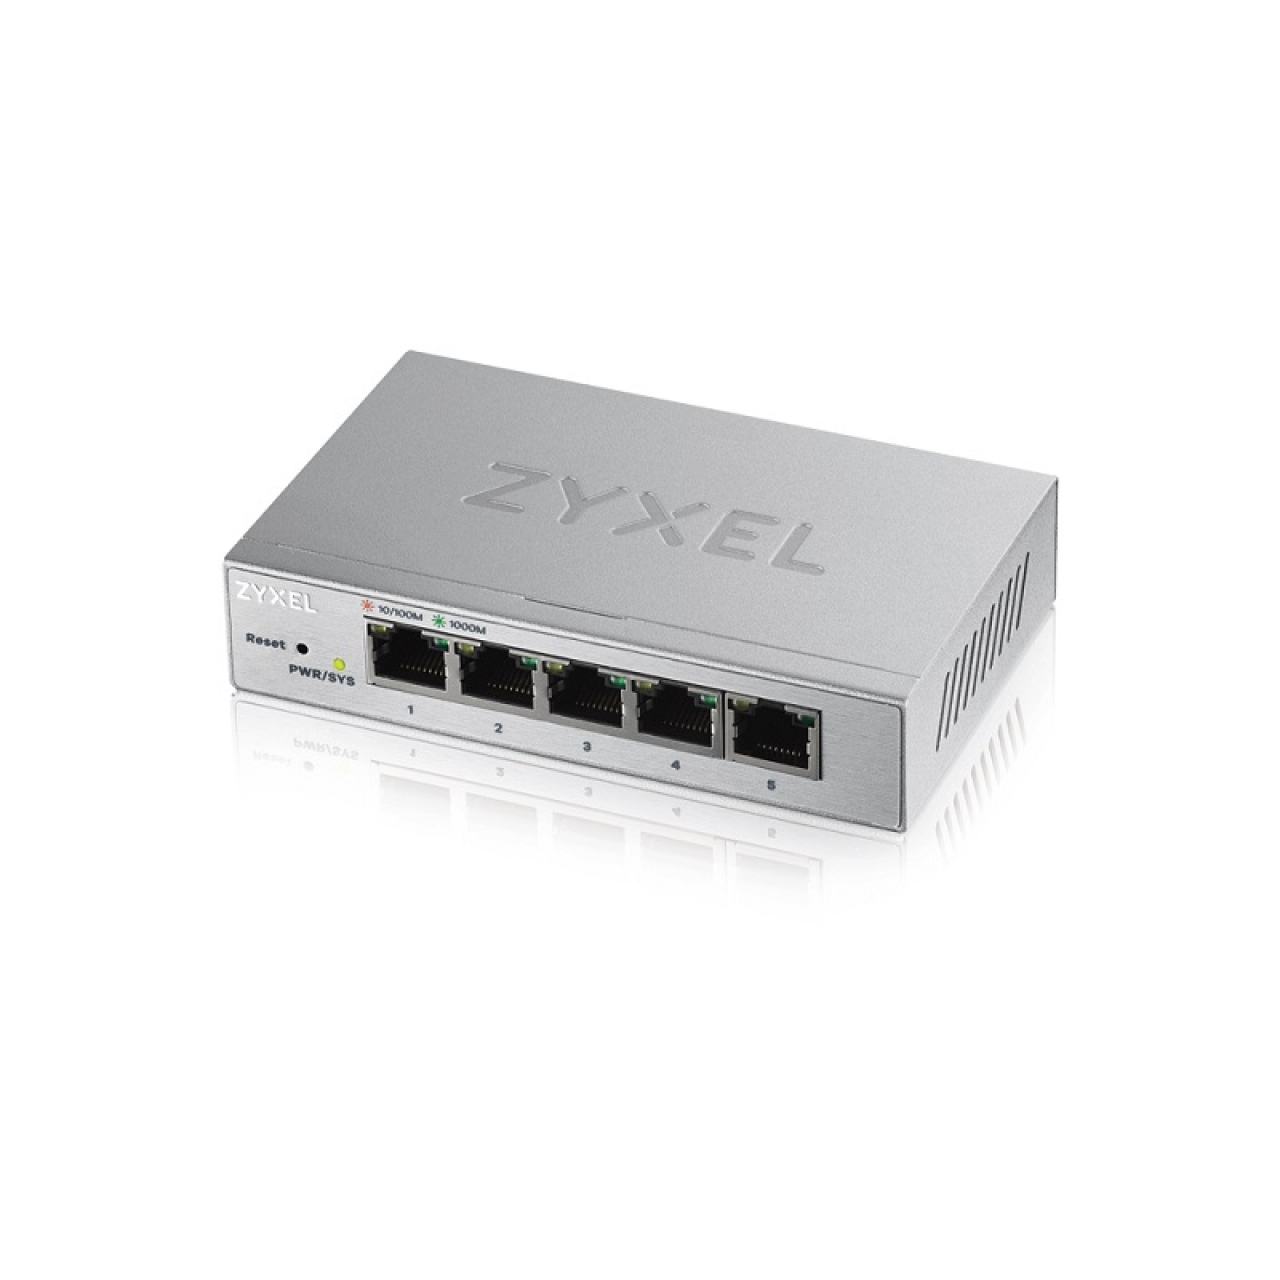 ZyXEL 5port GS1200-5 GIGABIT Yönetilebilir Switch Masaüstü